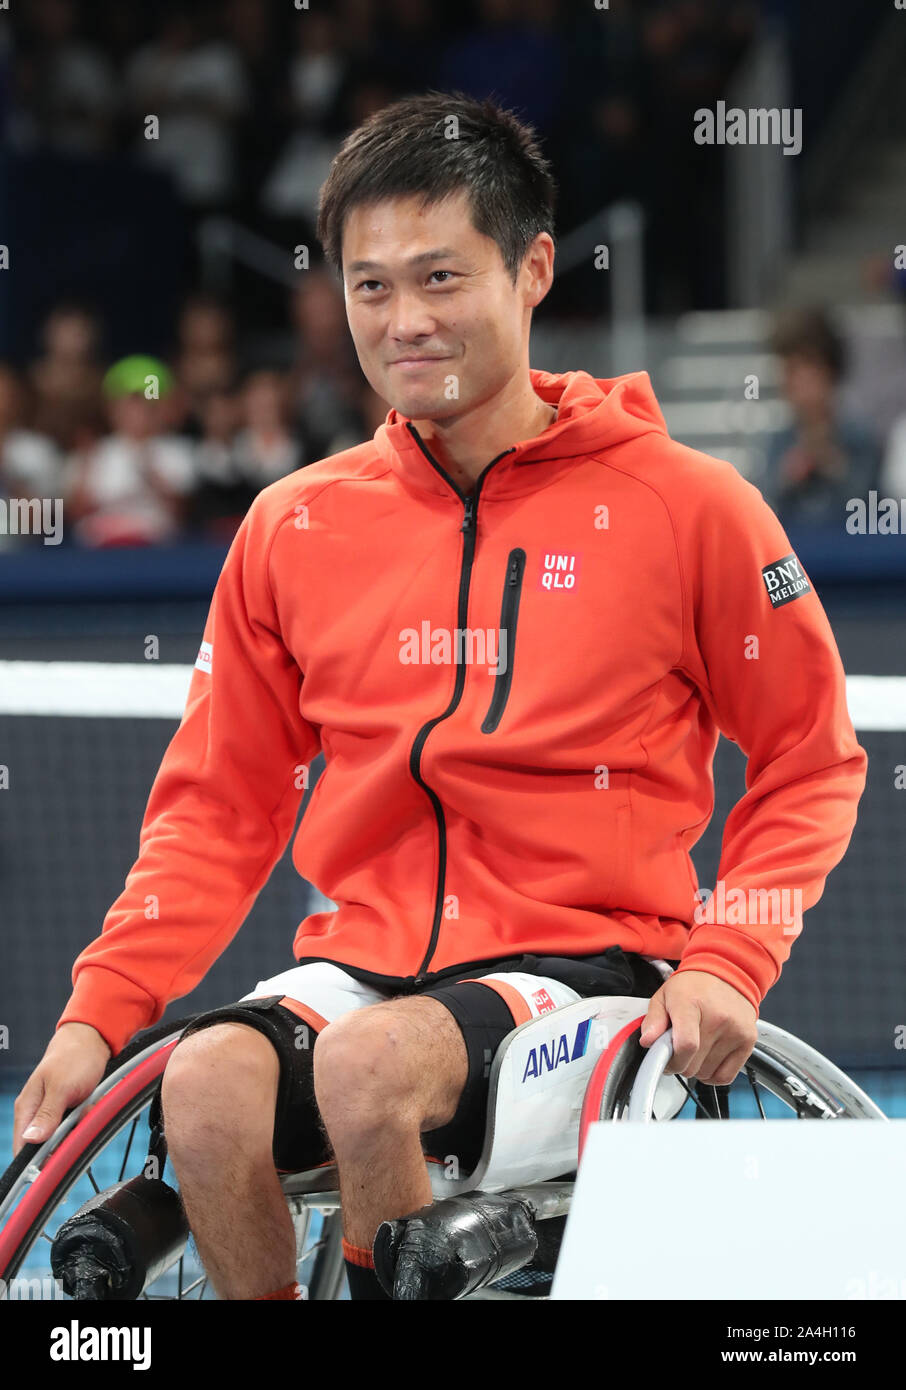 Tokio, Japón. 14 Oct, 2019. Japón gigante de ropa Uniqlo embajador japonés Shingo Kunieda Jugador de tenis en silla de ruedas sonríe como Uniqlo tiene una caridad tenis el evento 'Uniqlo